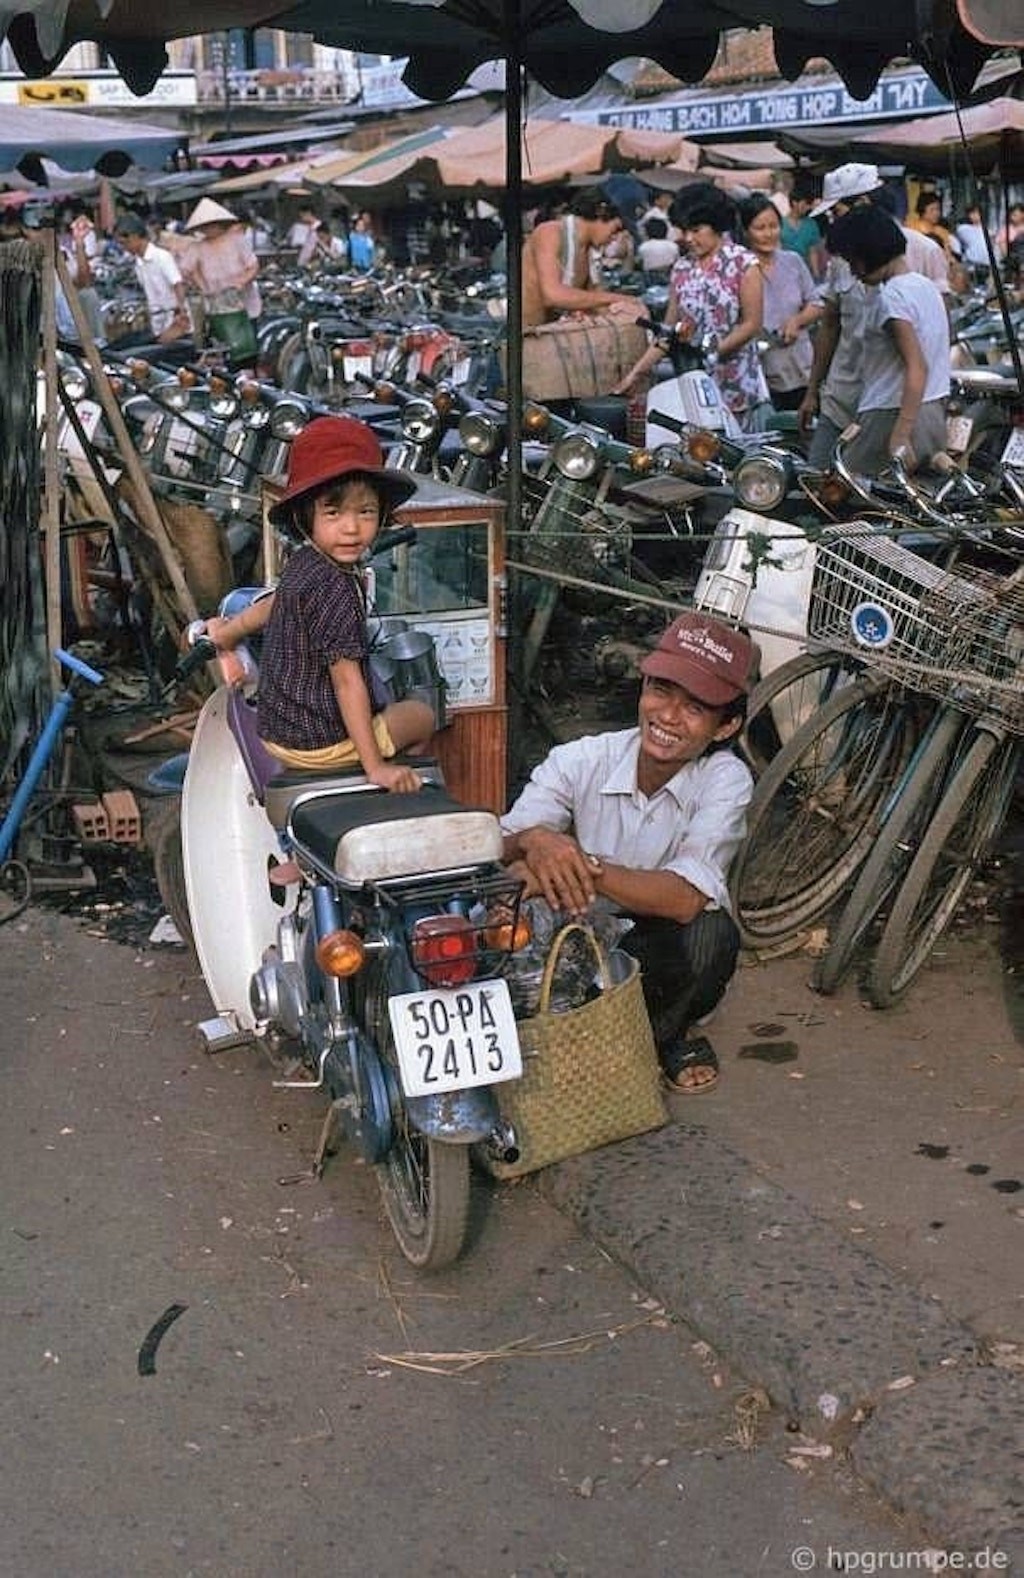 Chùm ảnh: Honda Super Cub “ngập tràn” đường phố Sài Gòn trước ngày Giải phóng miền Nam ảnh 1